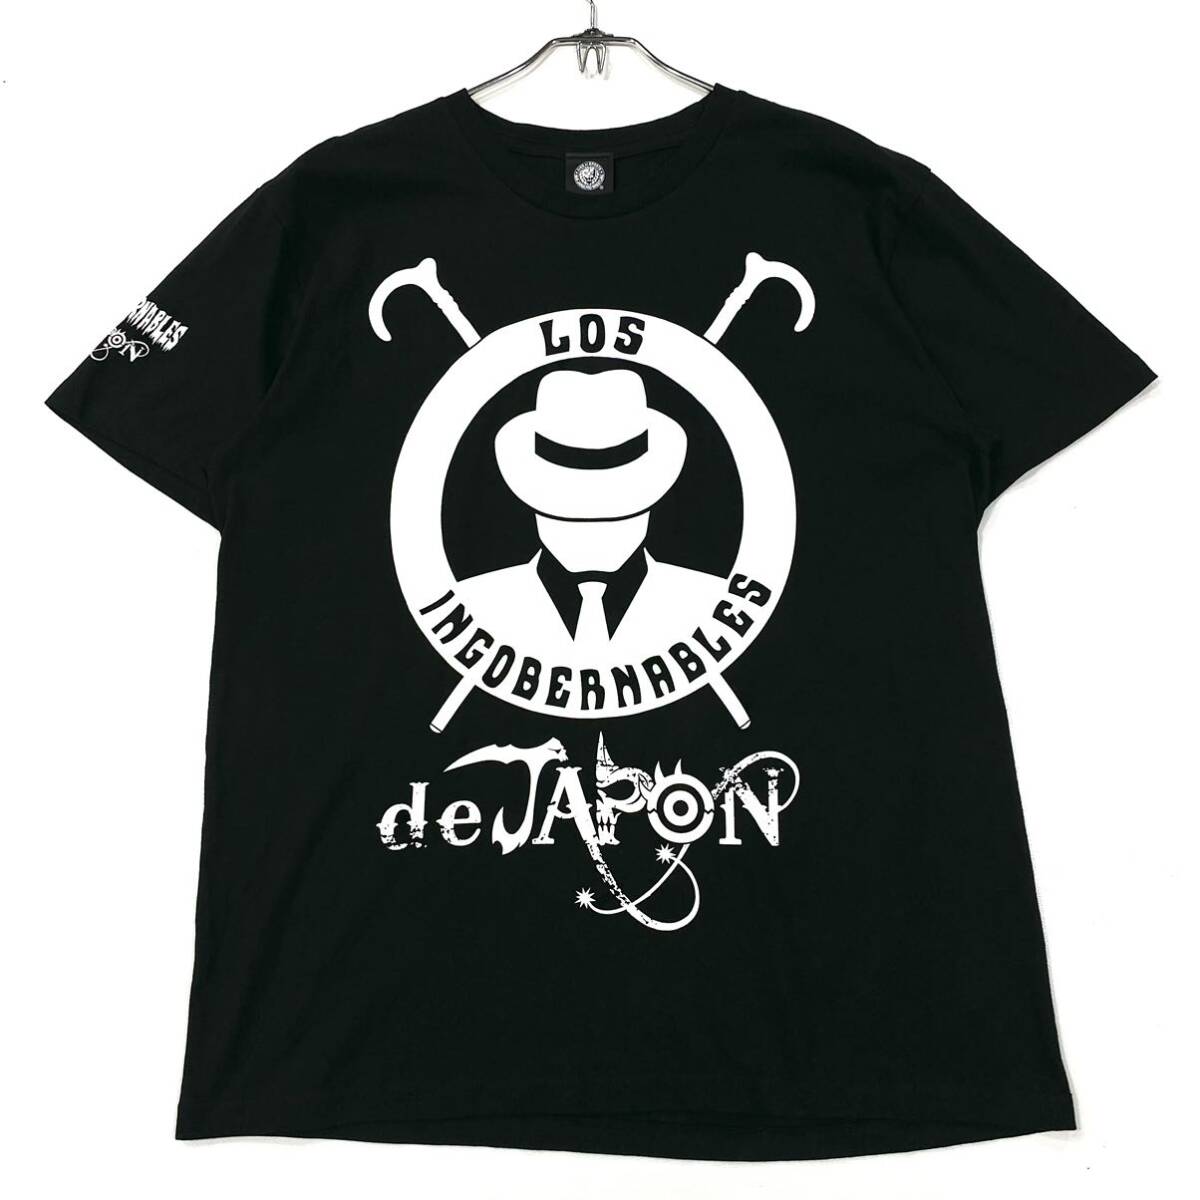 KING OF SPORTS/新日本プロレス Tシャツ LOSINGOBERNABLES メンズXL ブラック プリントロゴの画像1